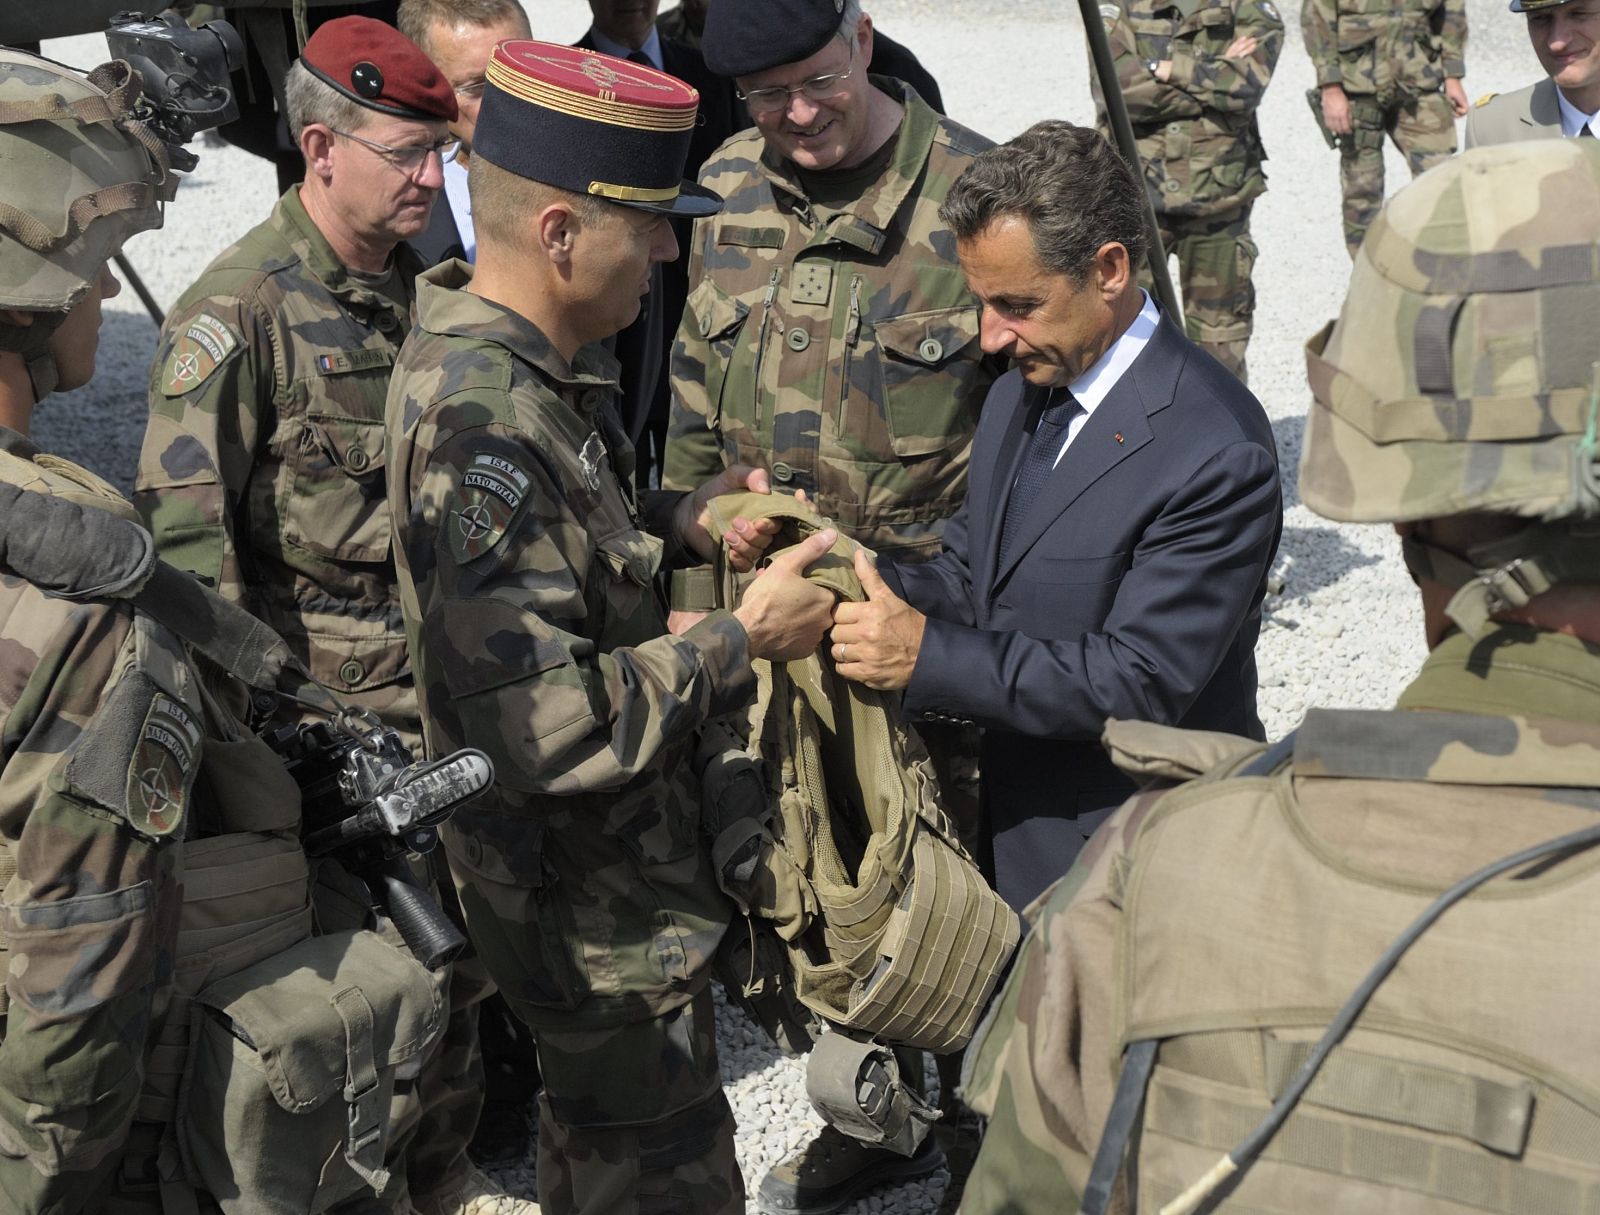 El presidente francés durante su visita sorpresa a Afganistán